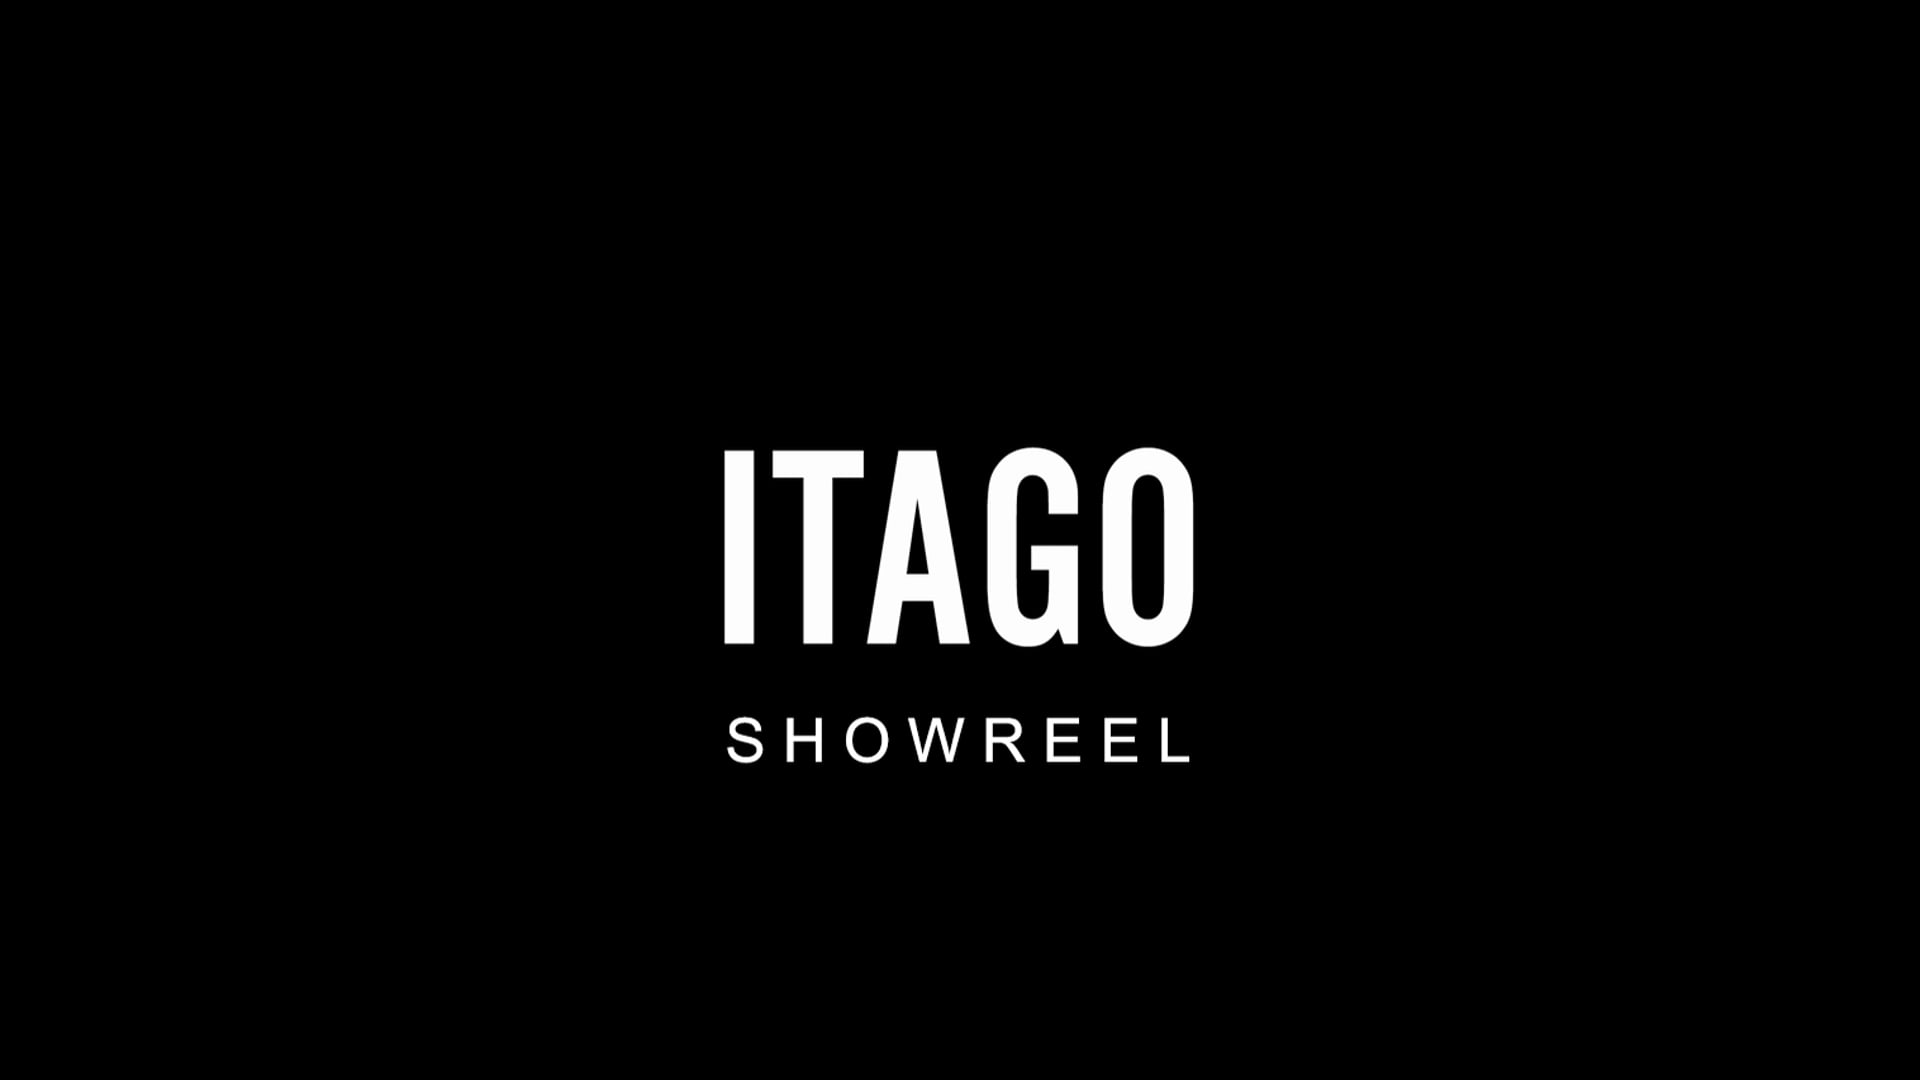 Itago Showreel